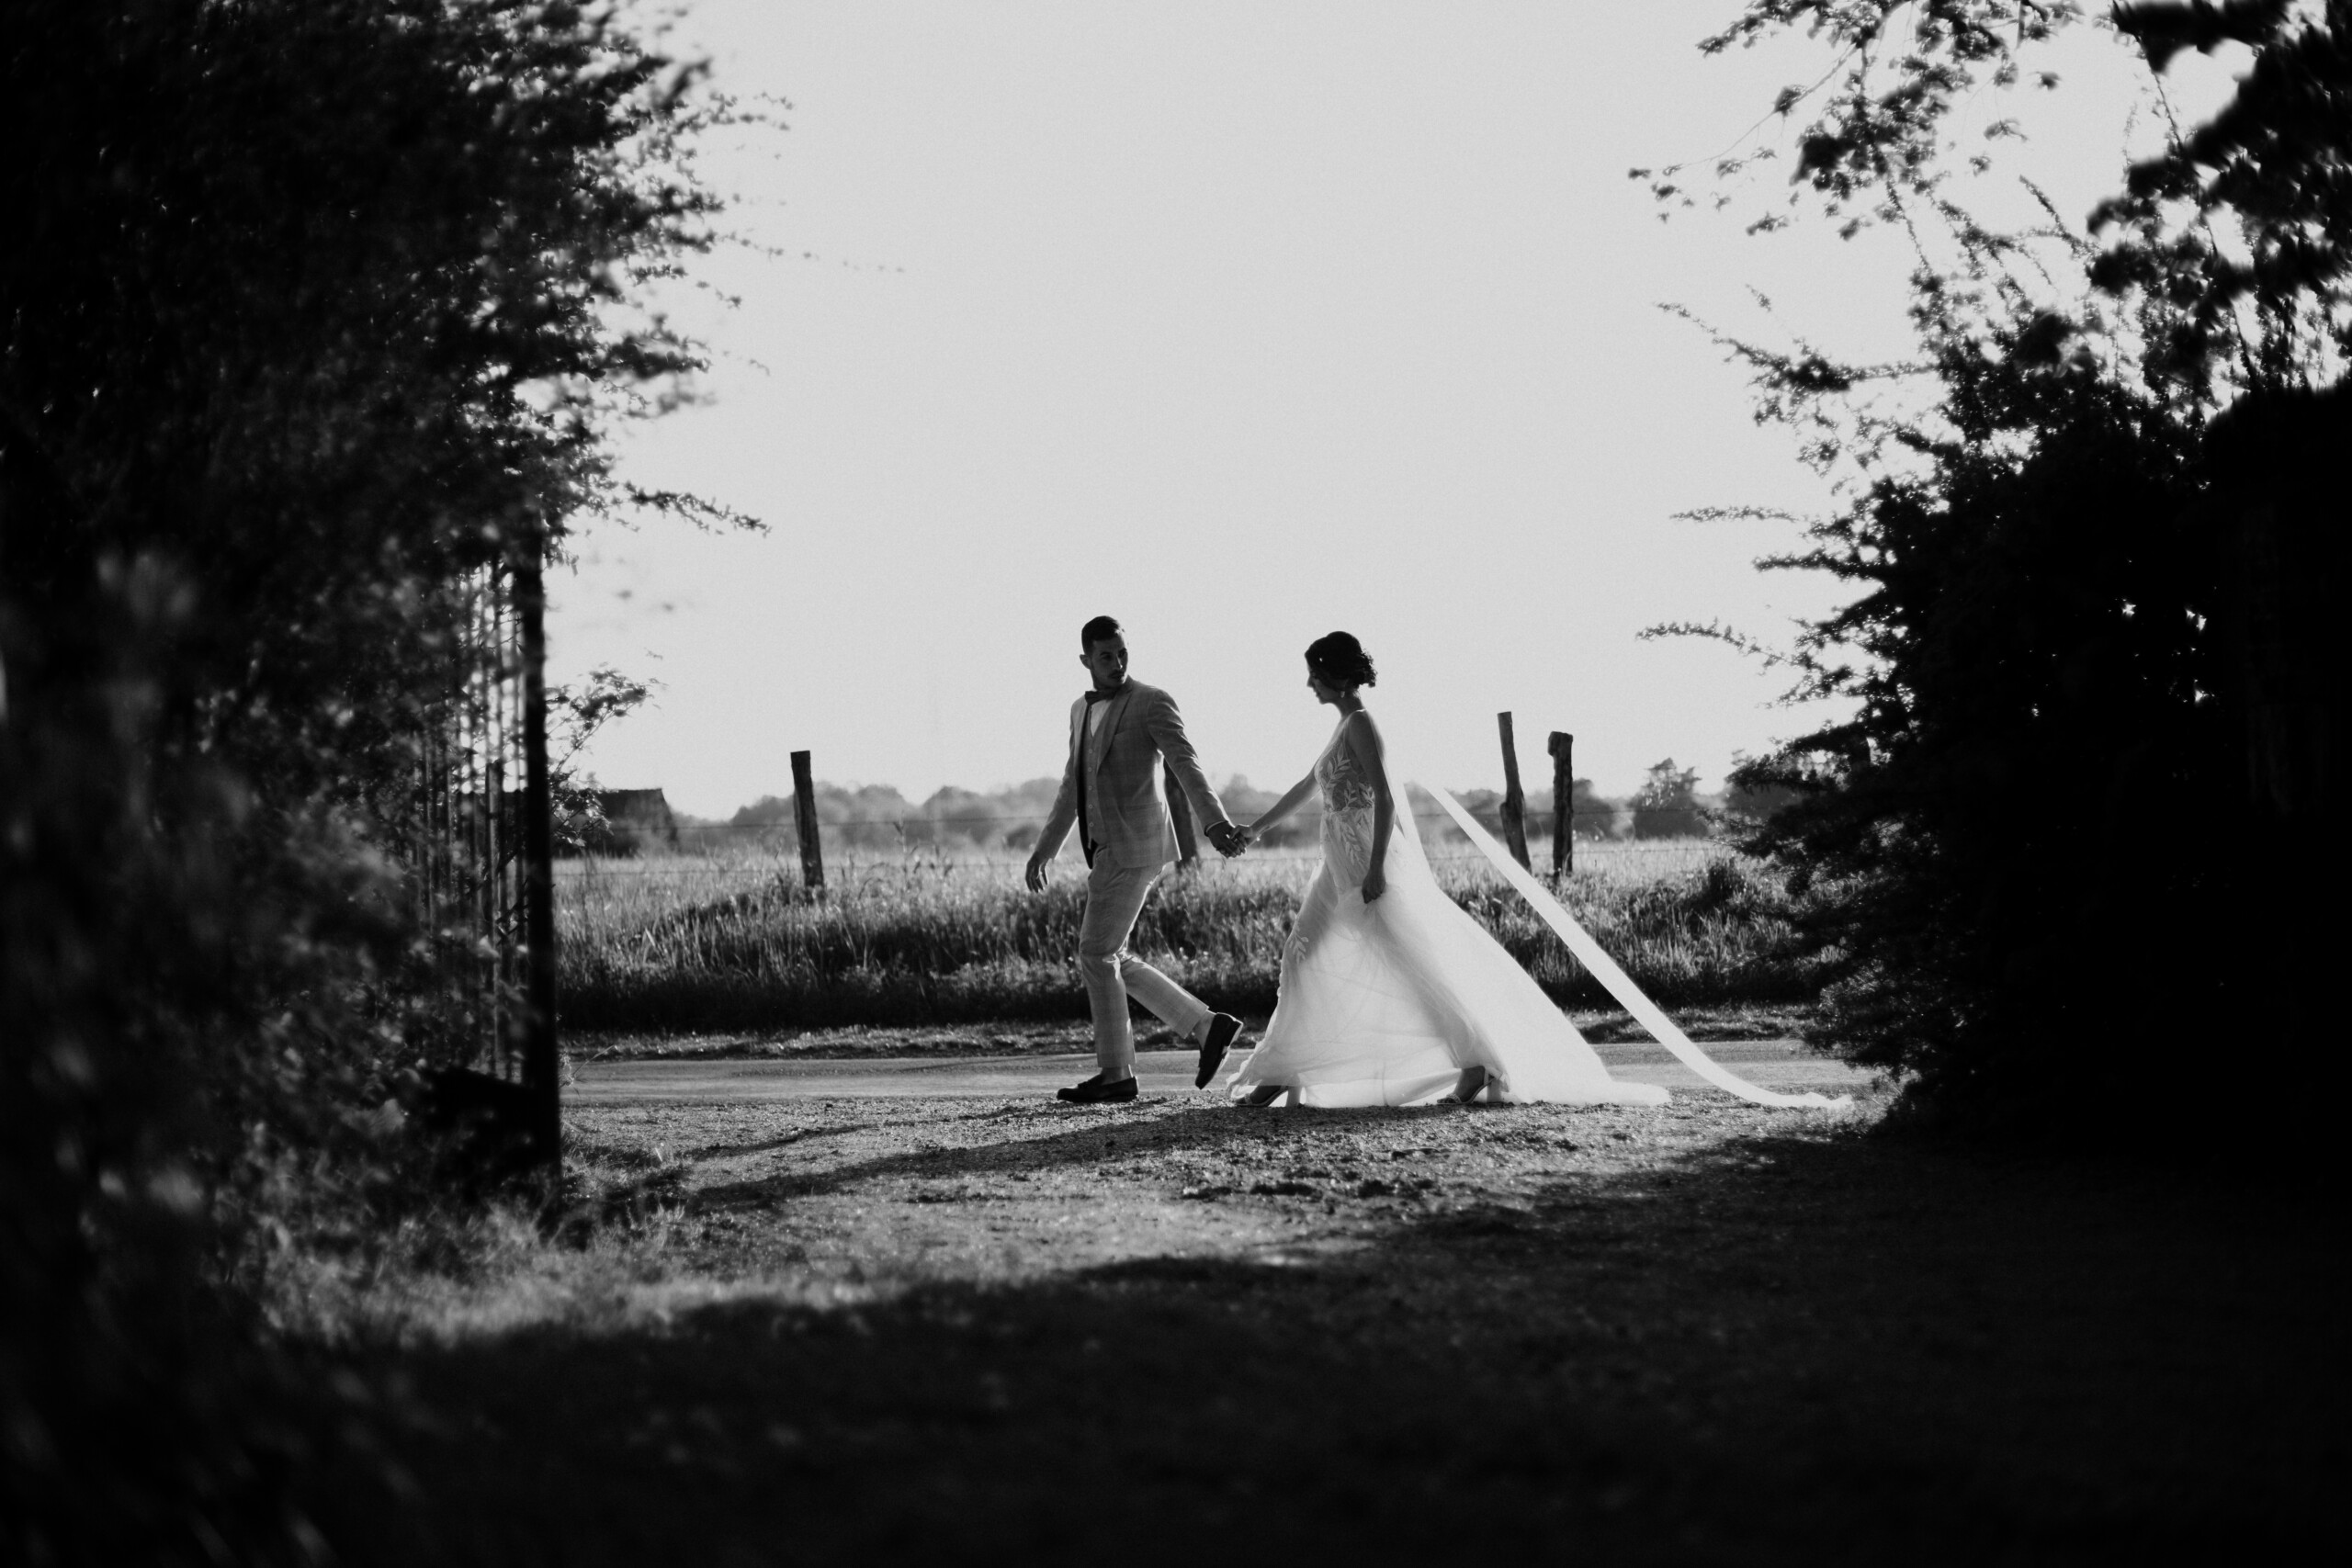 Photographe de mariage à Lyon, photographie naturelle et authentique